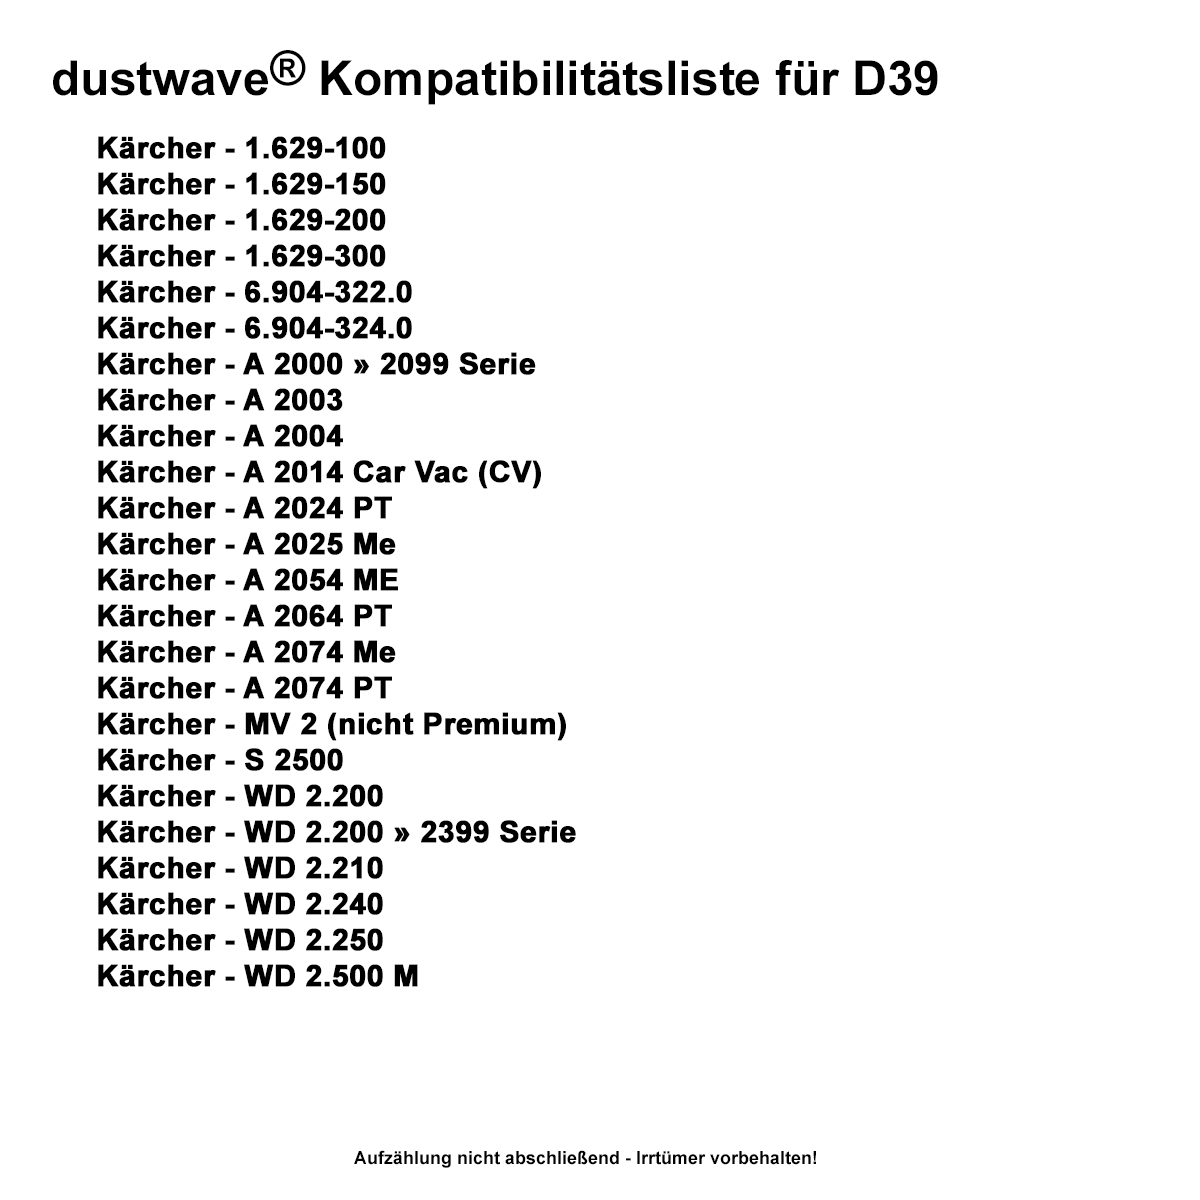 Dustwave® 10 Staubsaugerbeutel für Hoover BD S4125011 - hocheffizient, mehrlagiges Mikrovlies mit Hygieneverschluss - Made in Germany